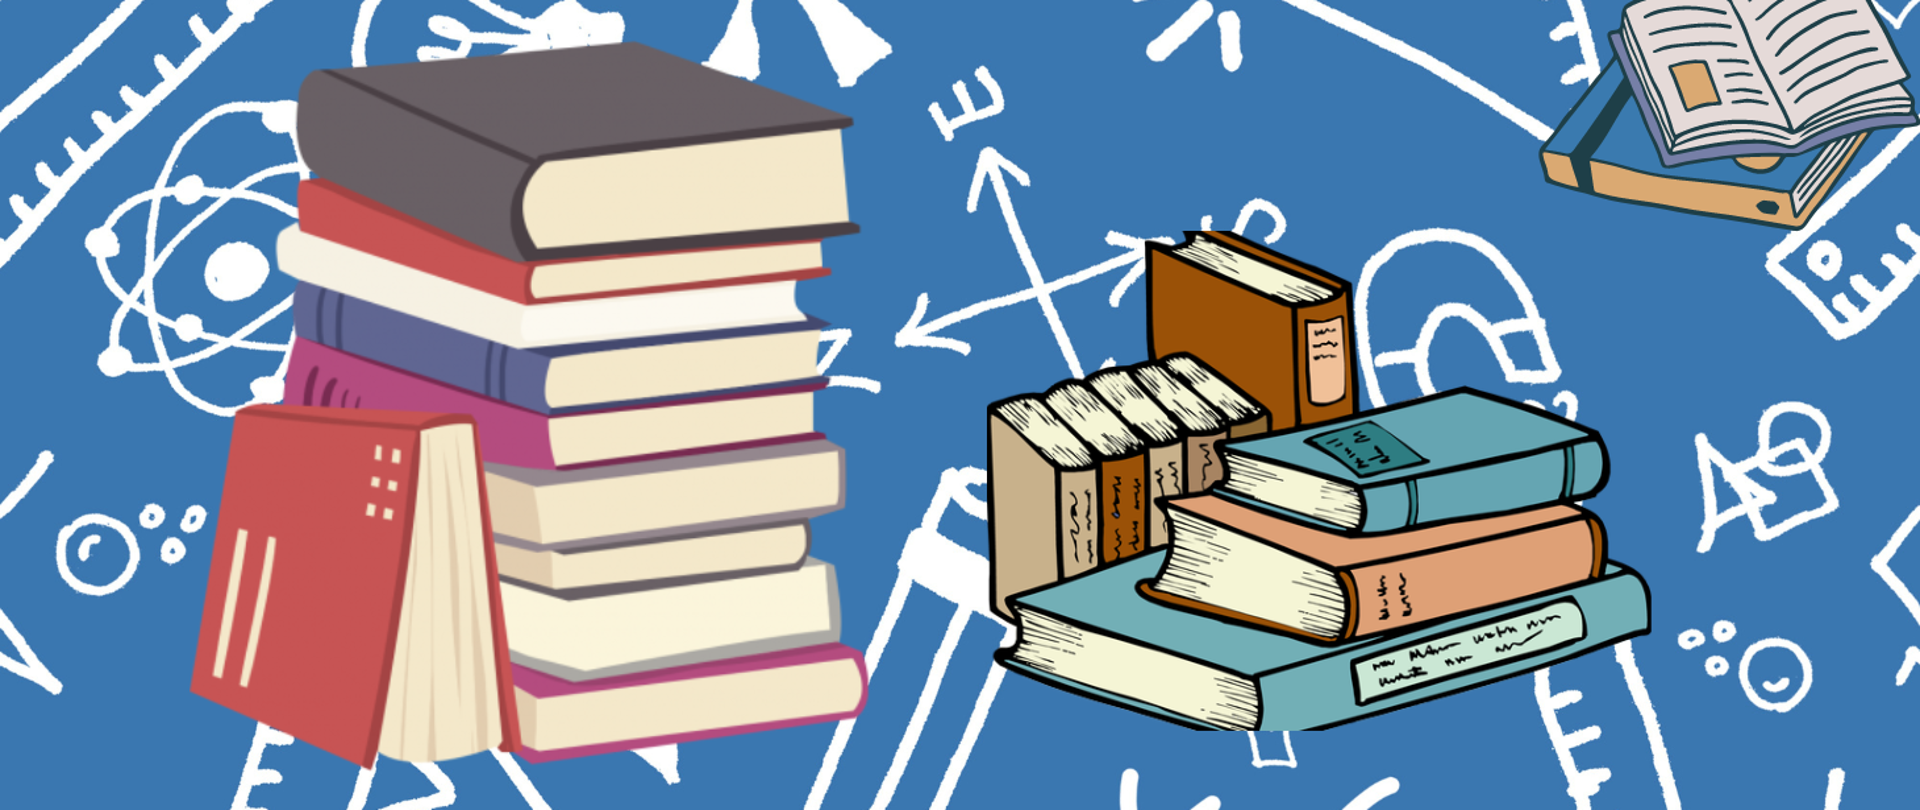 na niebieskim tle z symbolami graficznymi przedmiotów szkolnych książki ułożone w słupkach 